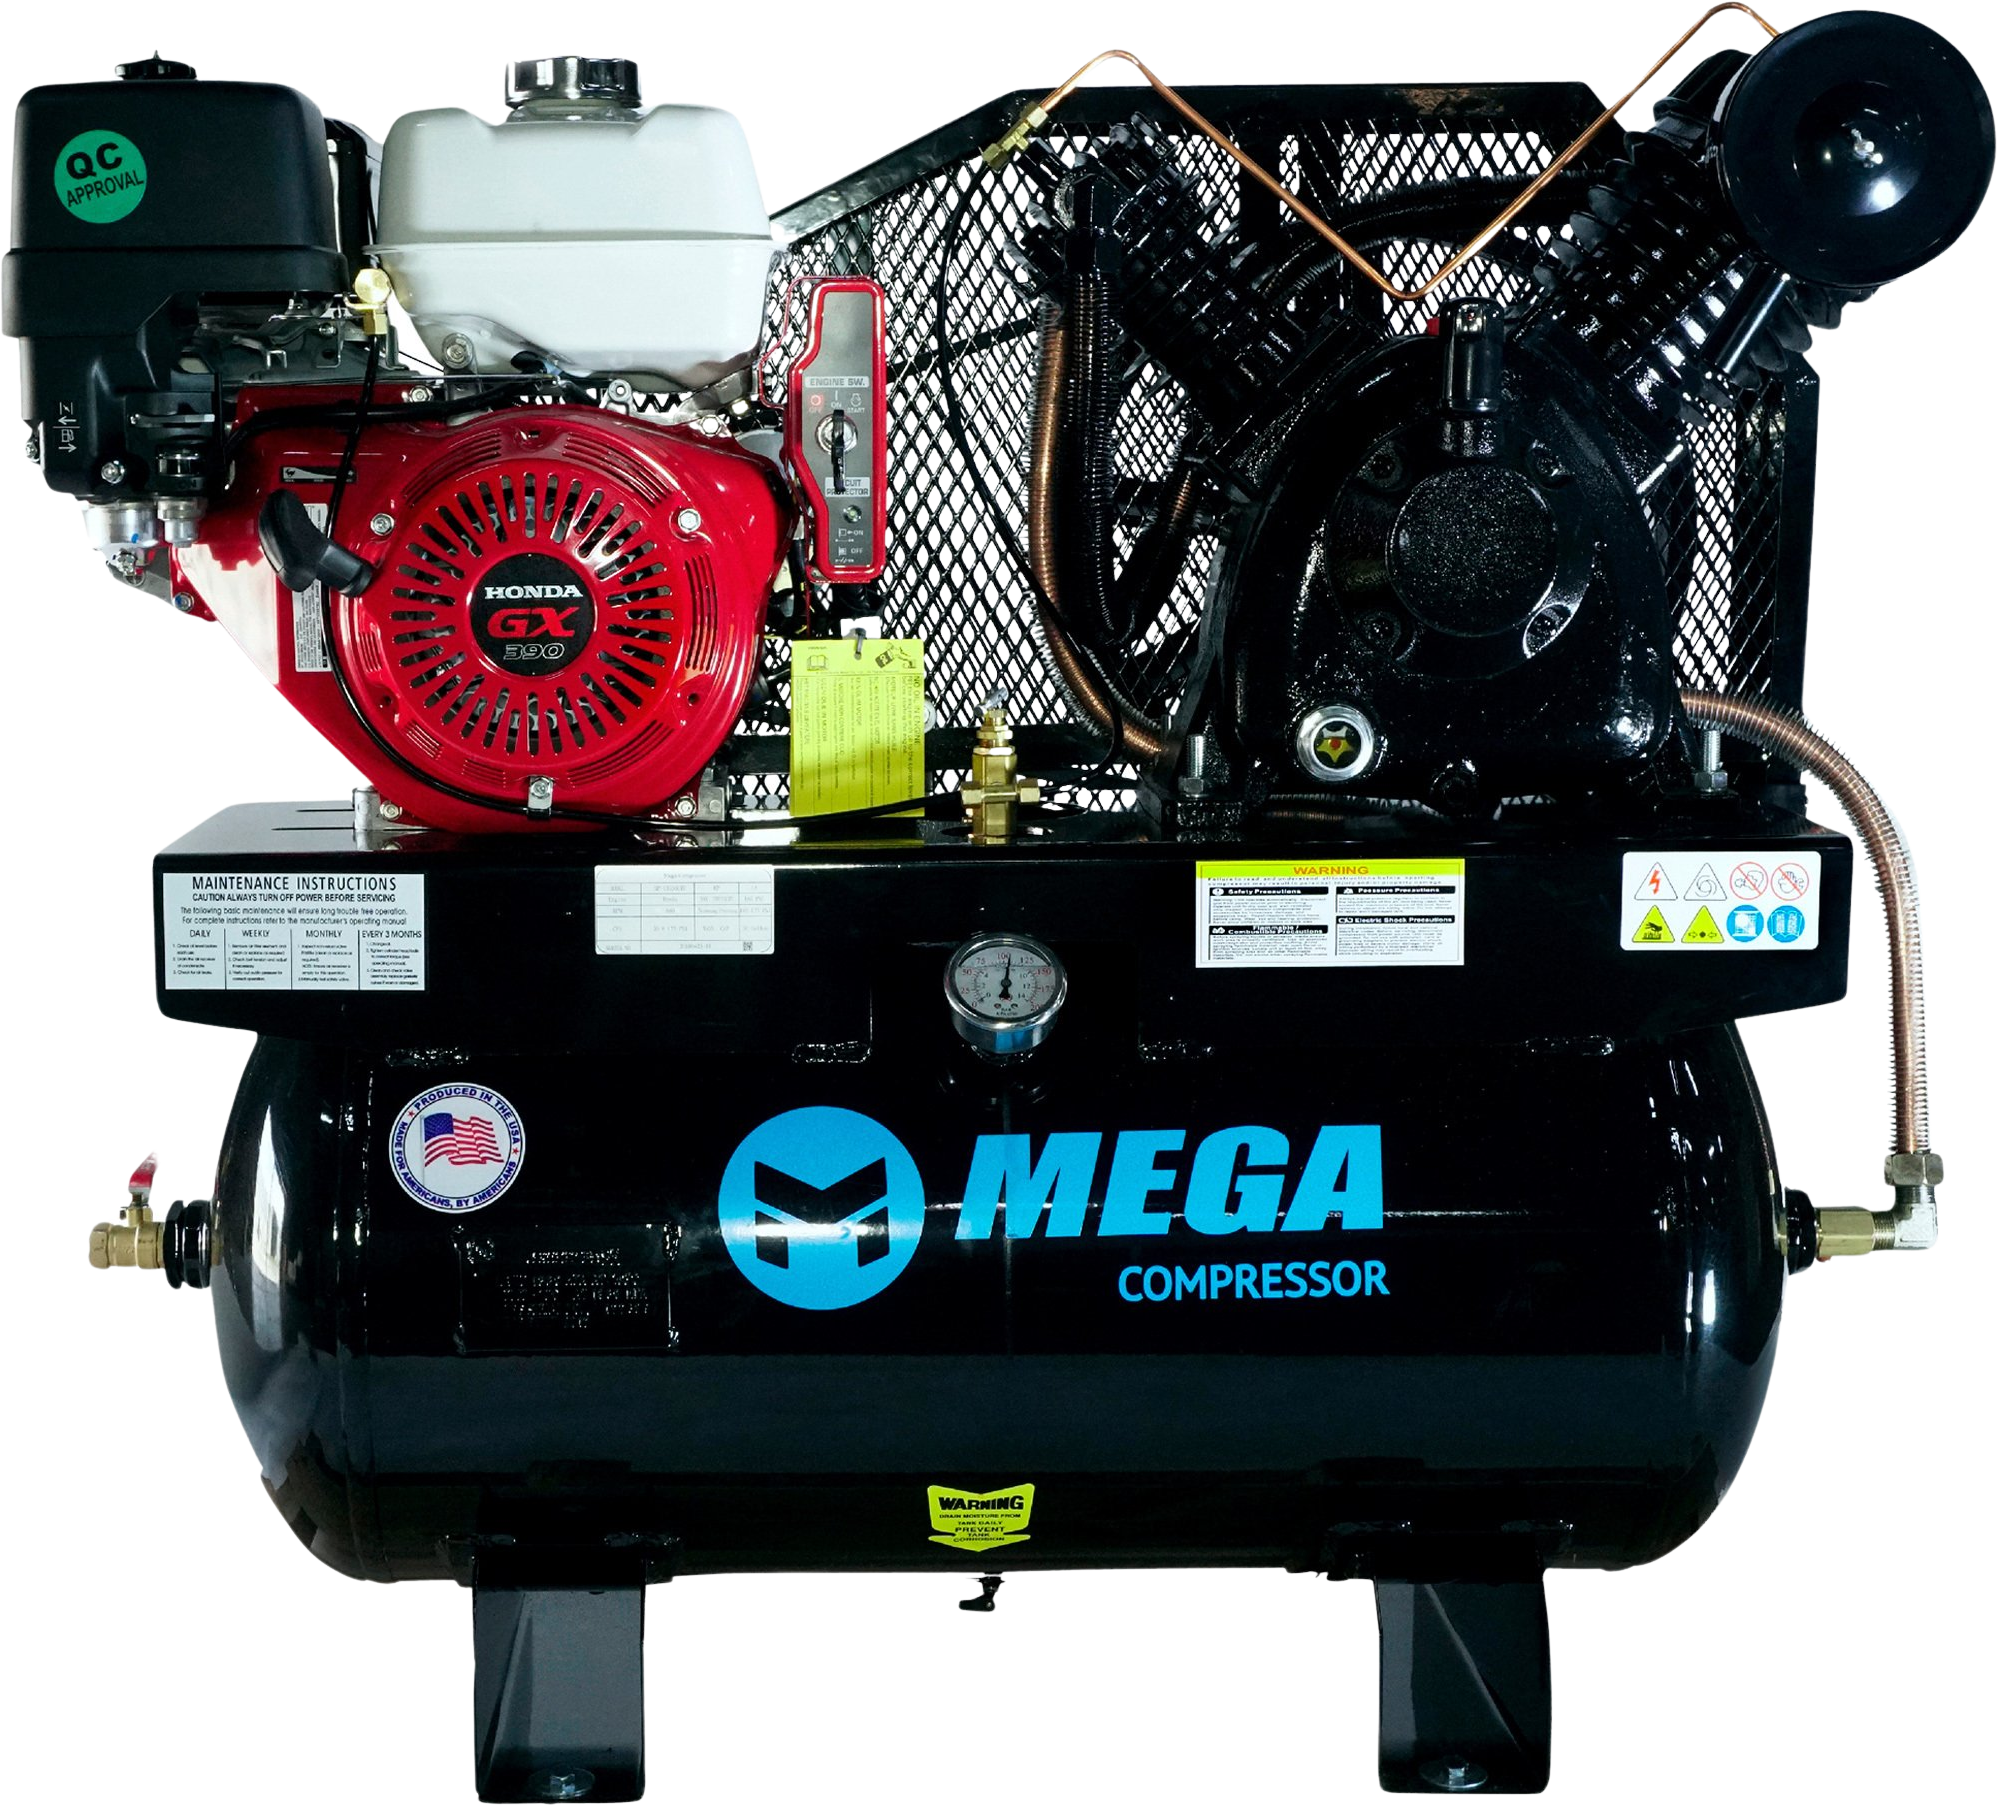 Mega Compressor, Mega Compressor MP-13030GTU Air Compressor Truck Mount 30 Gallon 13 HP 175 PSI Honda Engine Gas New